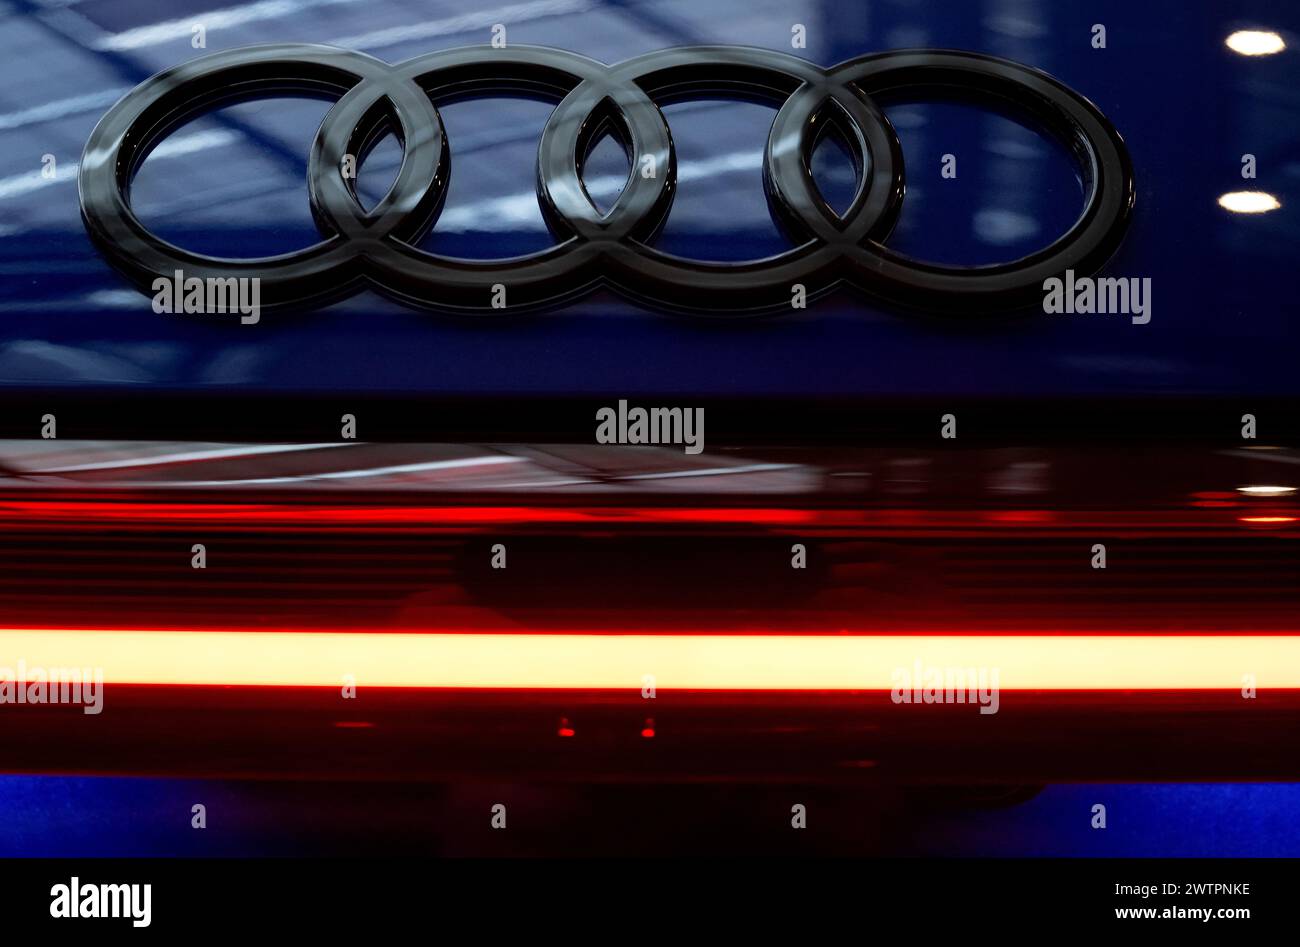 Ingolstadt, Allemagne. 19 mars 2024. Le logo Audi peut être vu sur une voiture au siège de la société avant le début de la conférence de presse annuelle. Audi présente les chiffres de l’exercice 2023. Crédit : Sven Hoppe/dpa/Alamy Live News Banque D'Images